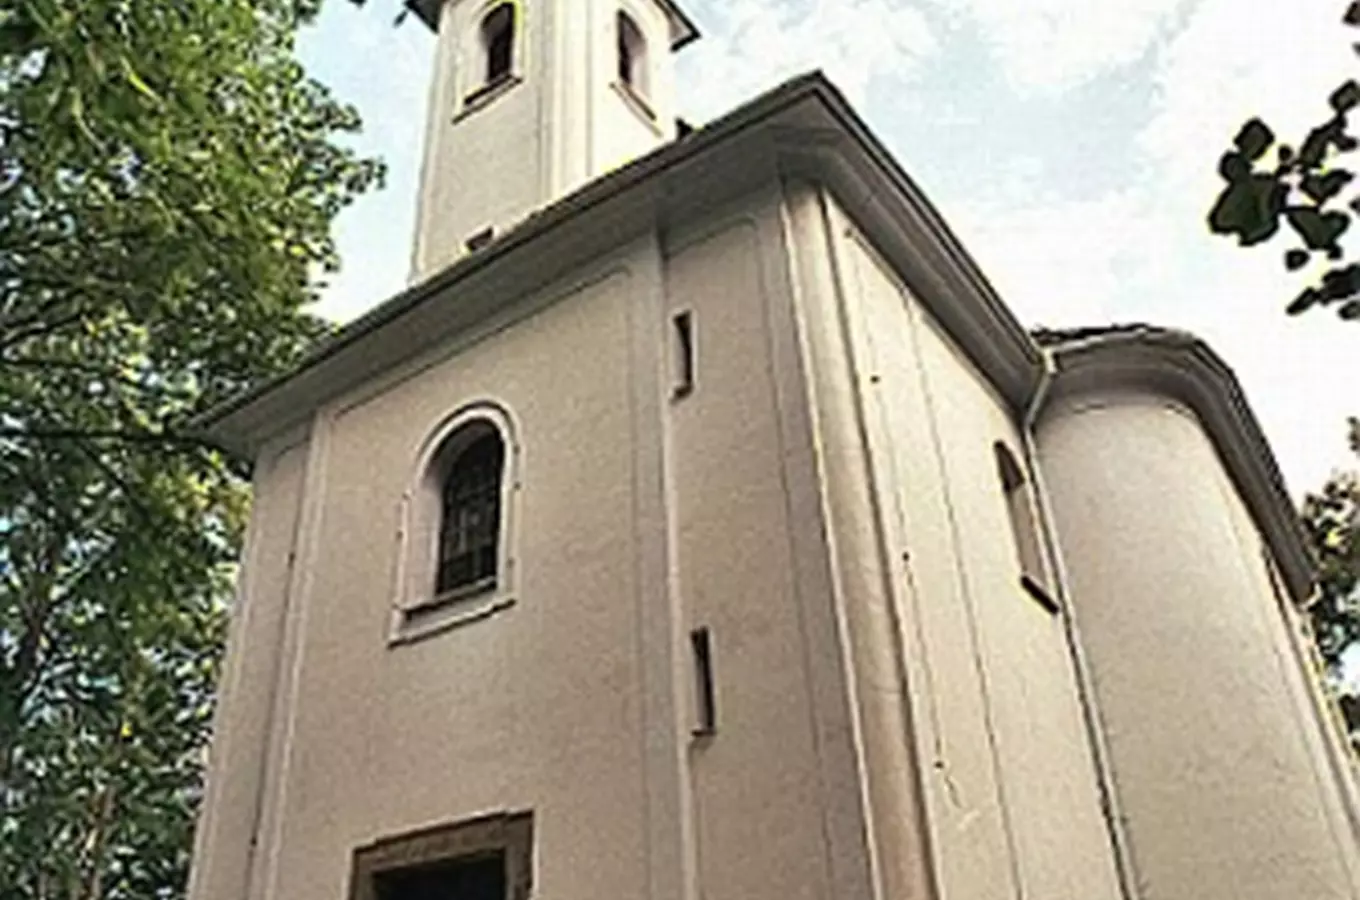 Barokní kostel Povýšení sv. Kříže v Moravském Berouně